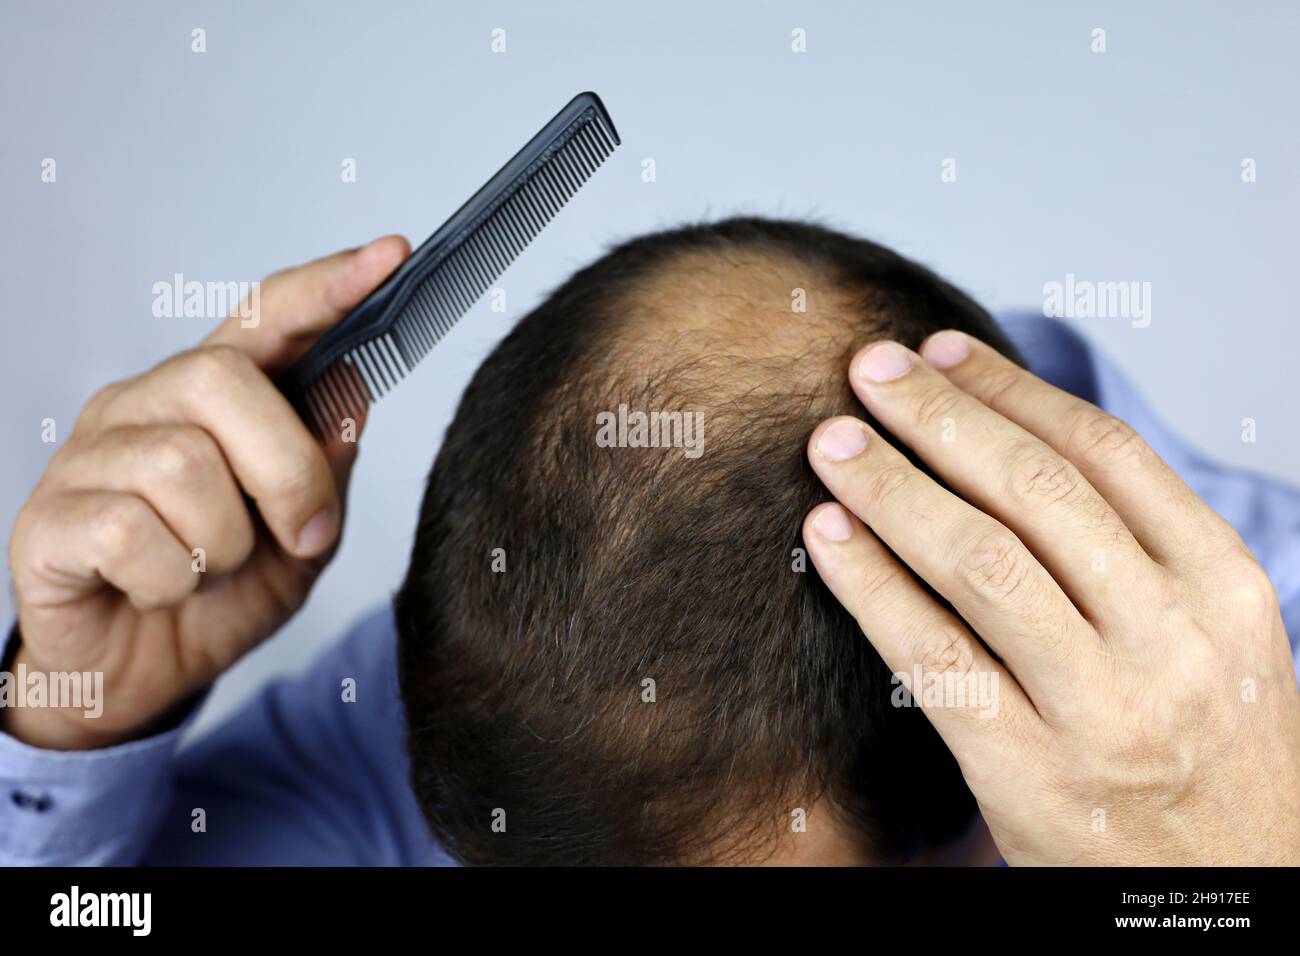 Kahlheit, Mann kämmt seinen Kopf mit einem Kamm. Männliche Hand auf einer Glatze, Person besorgt über Haarausfall Stockfoto